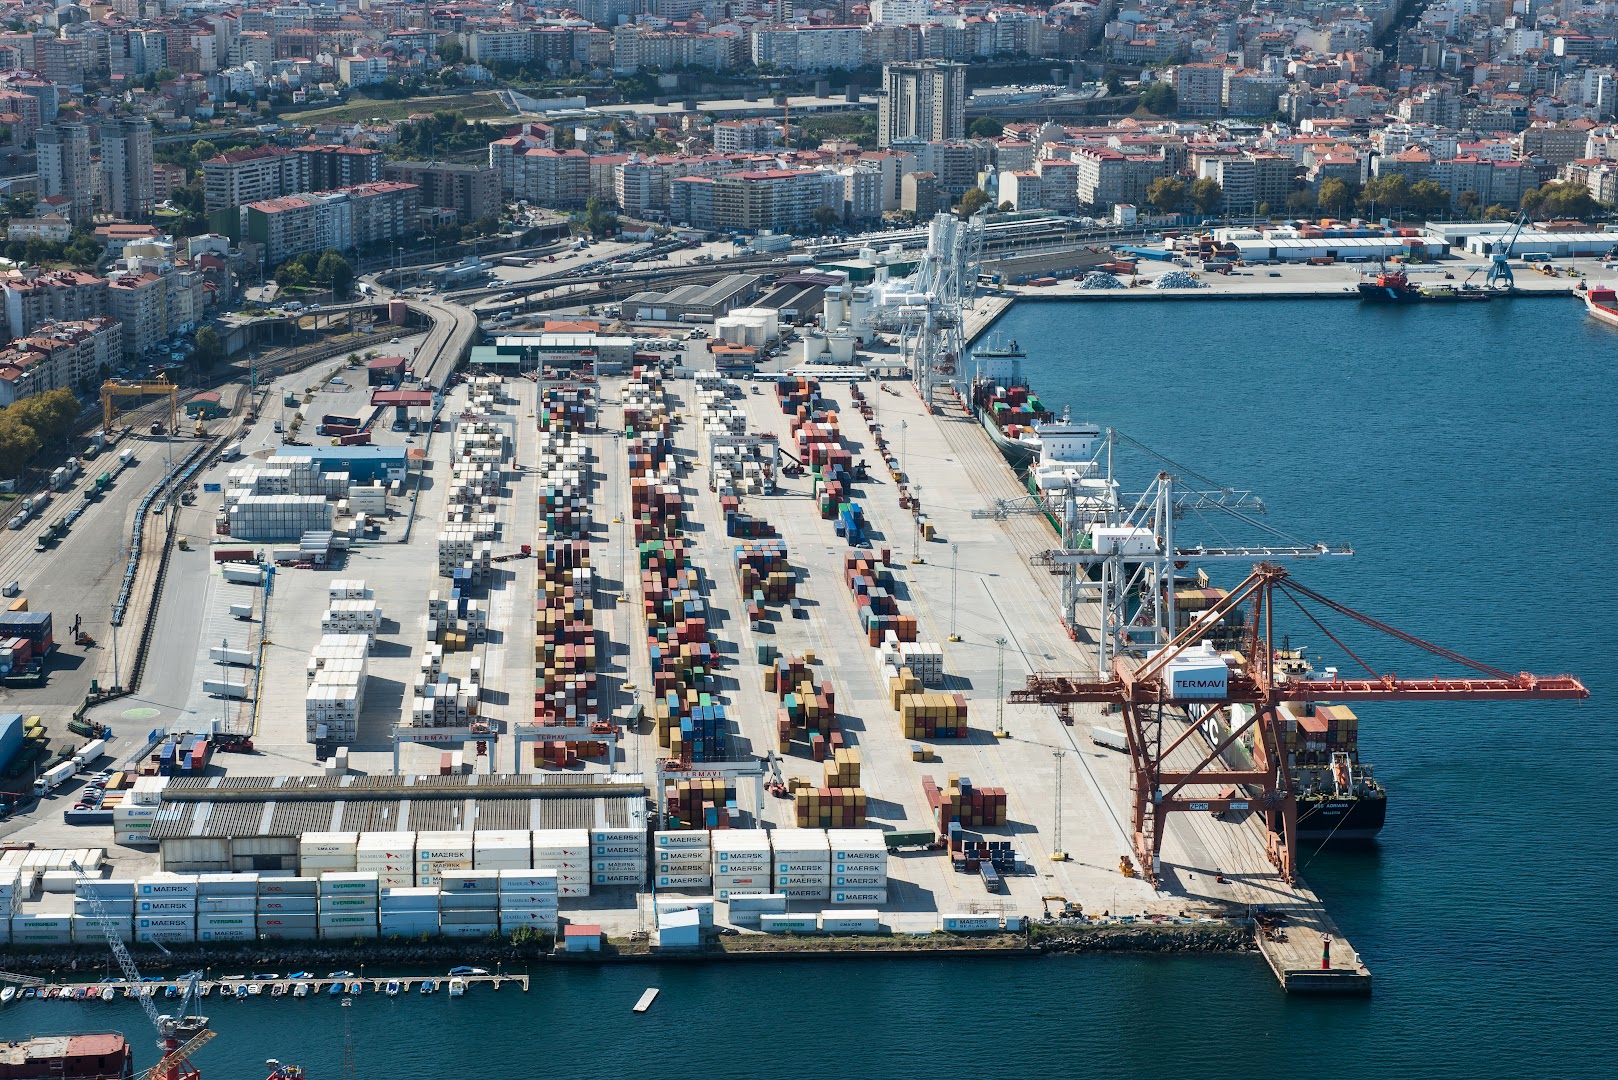 Termavi-Terminales Marítimas de Vigo